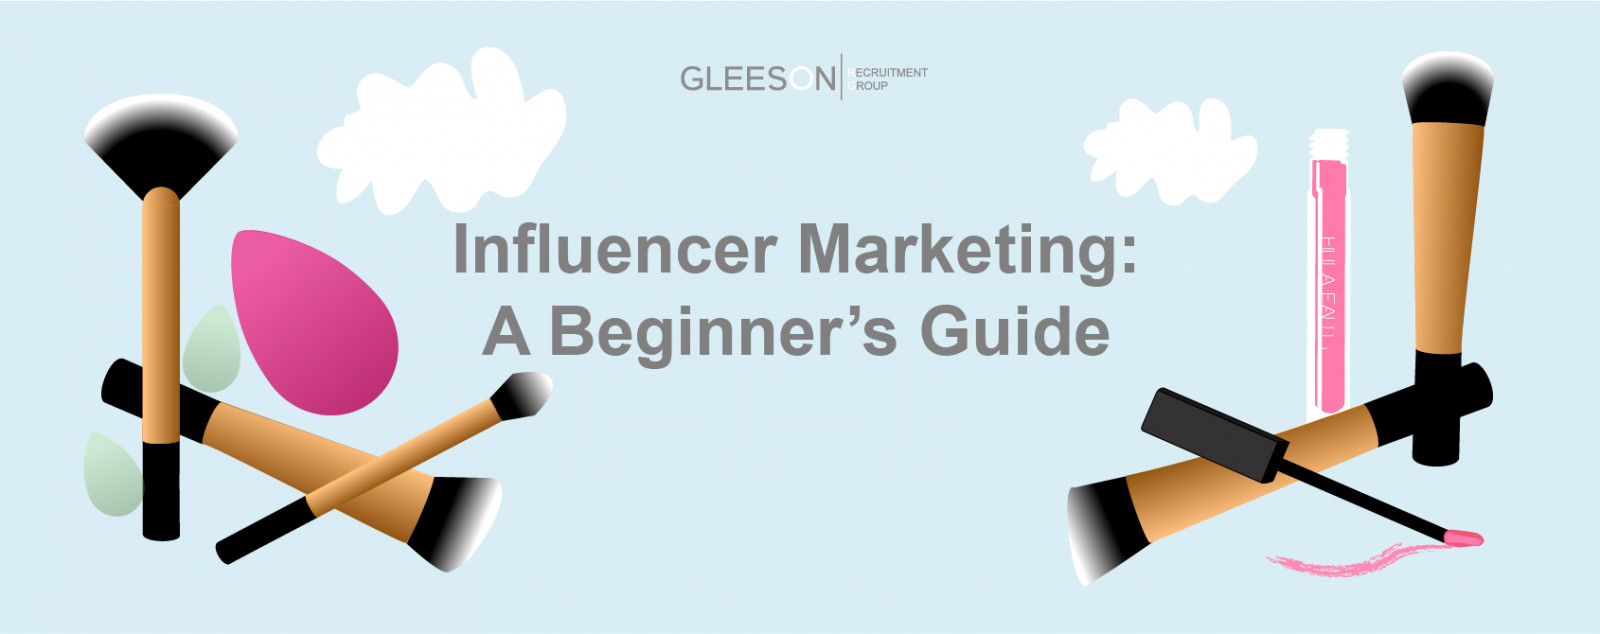 Influencer Marketing: A Beginner's Guide